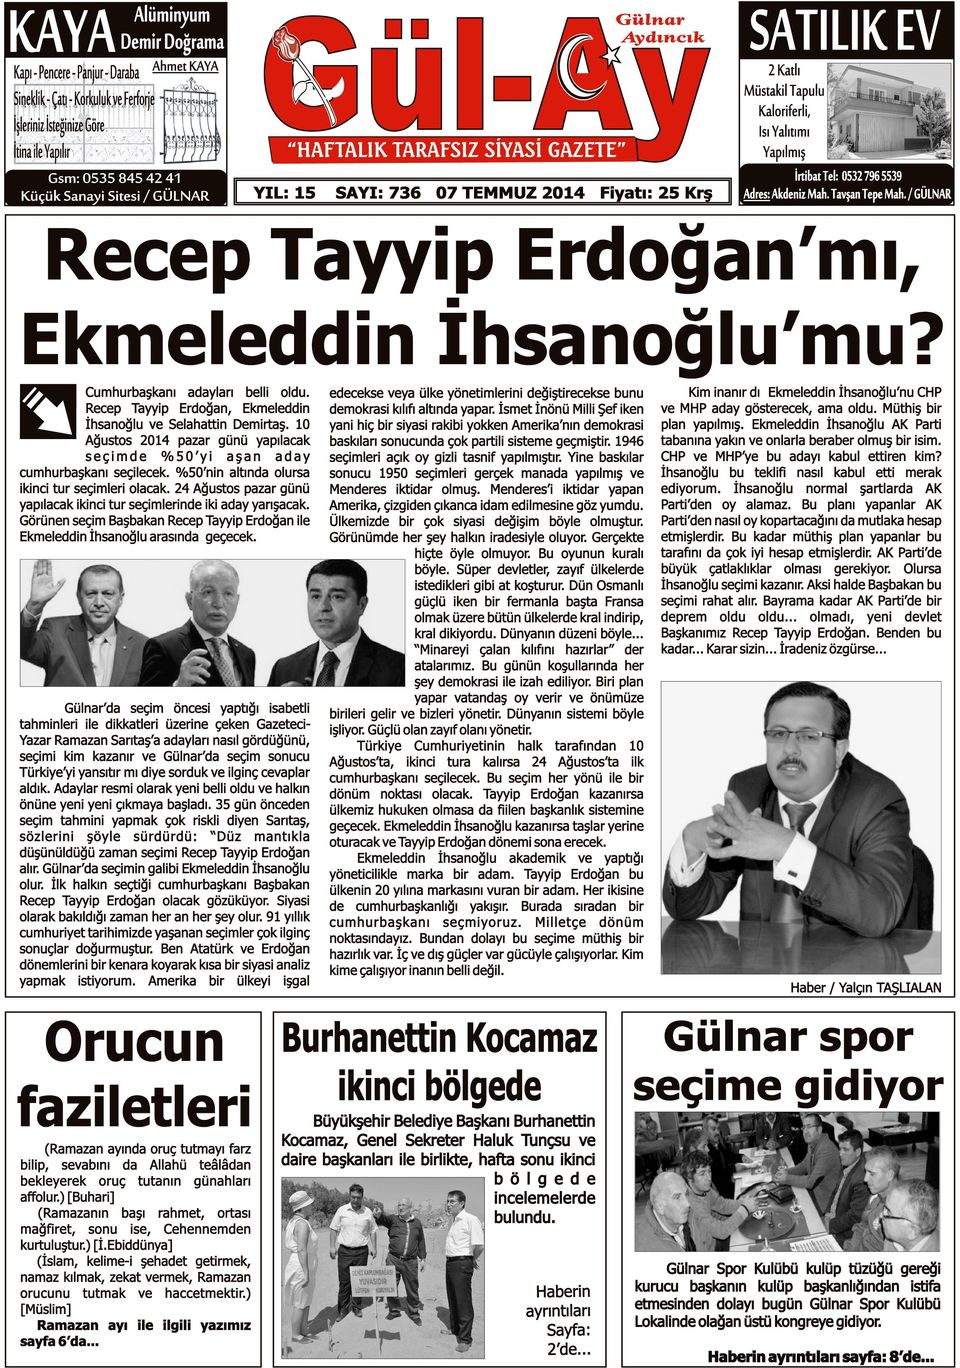 796 5539 Adres: Akdeniz Mah. Tavşan Tepe Mah. / GÜLNAR Recep Tayyip Erdoğan mı, Ekmeleddin İhsanoğlu mu? Cumhurbaşkanı adayları belli oldu.